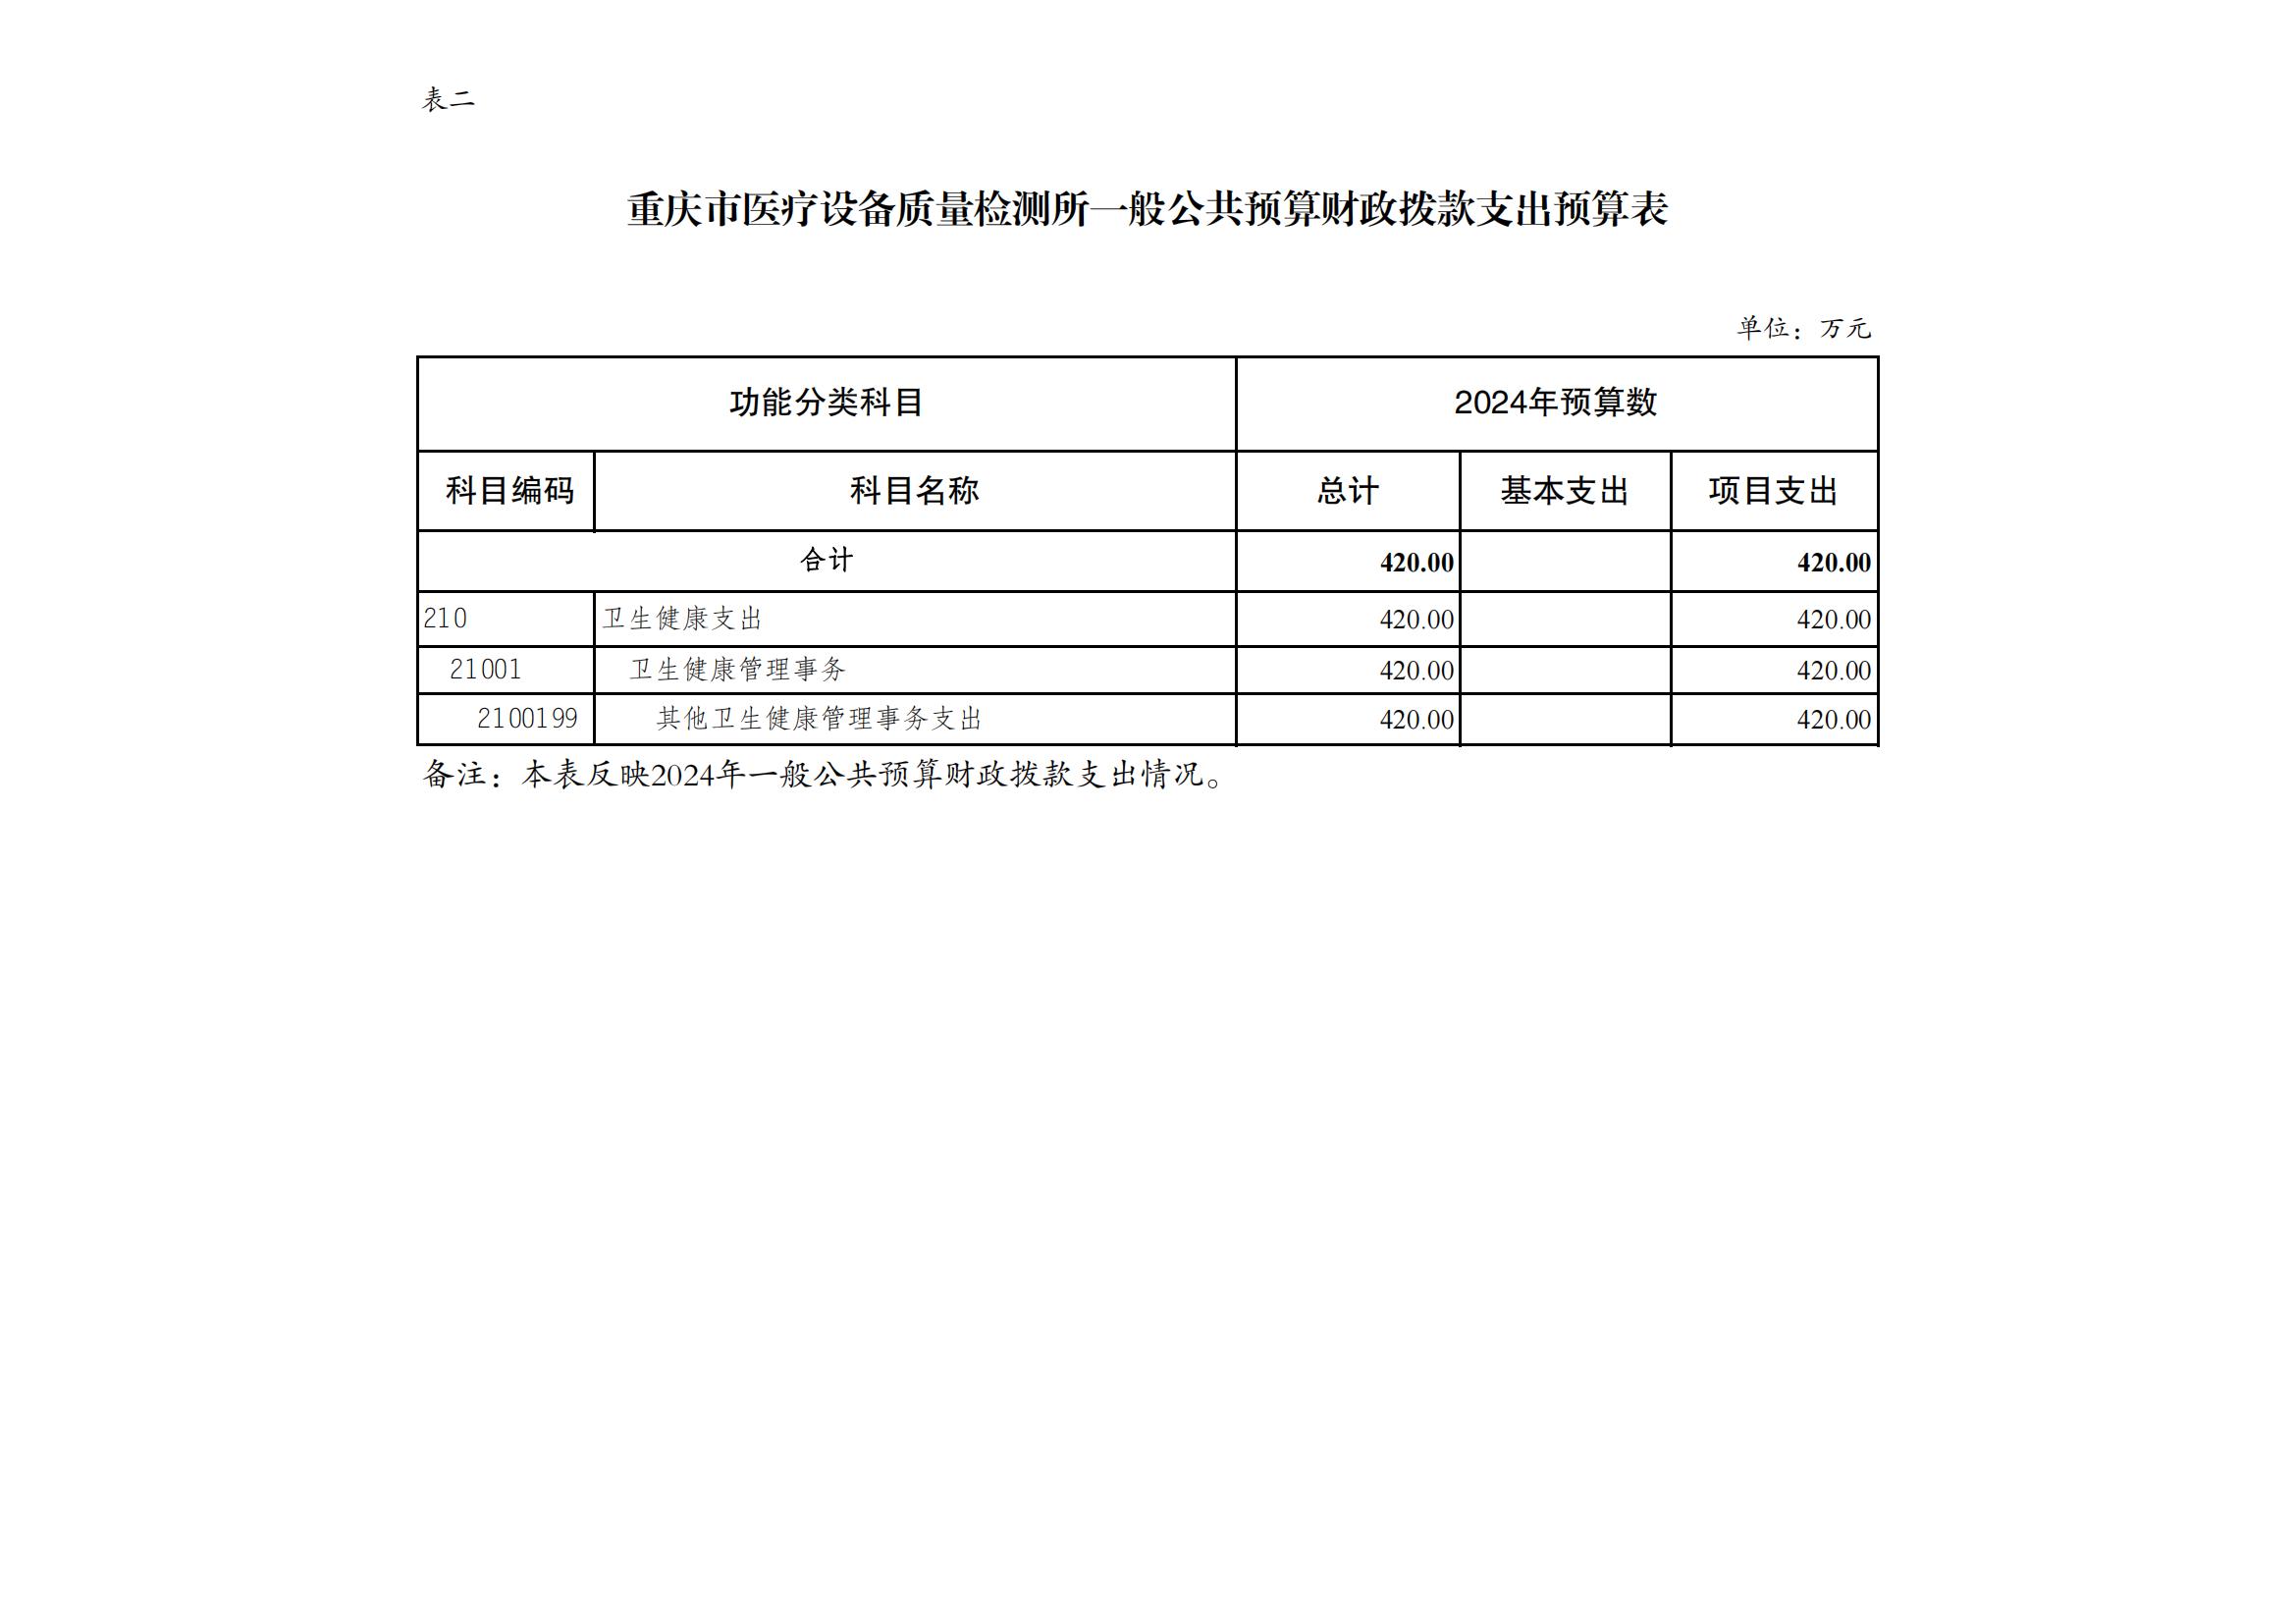 重庆市医疗设备质量检测所2024年单位预算情况说明_05.jpg